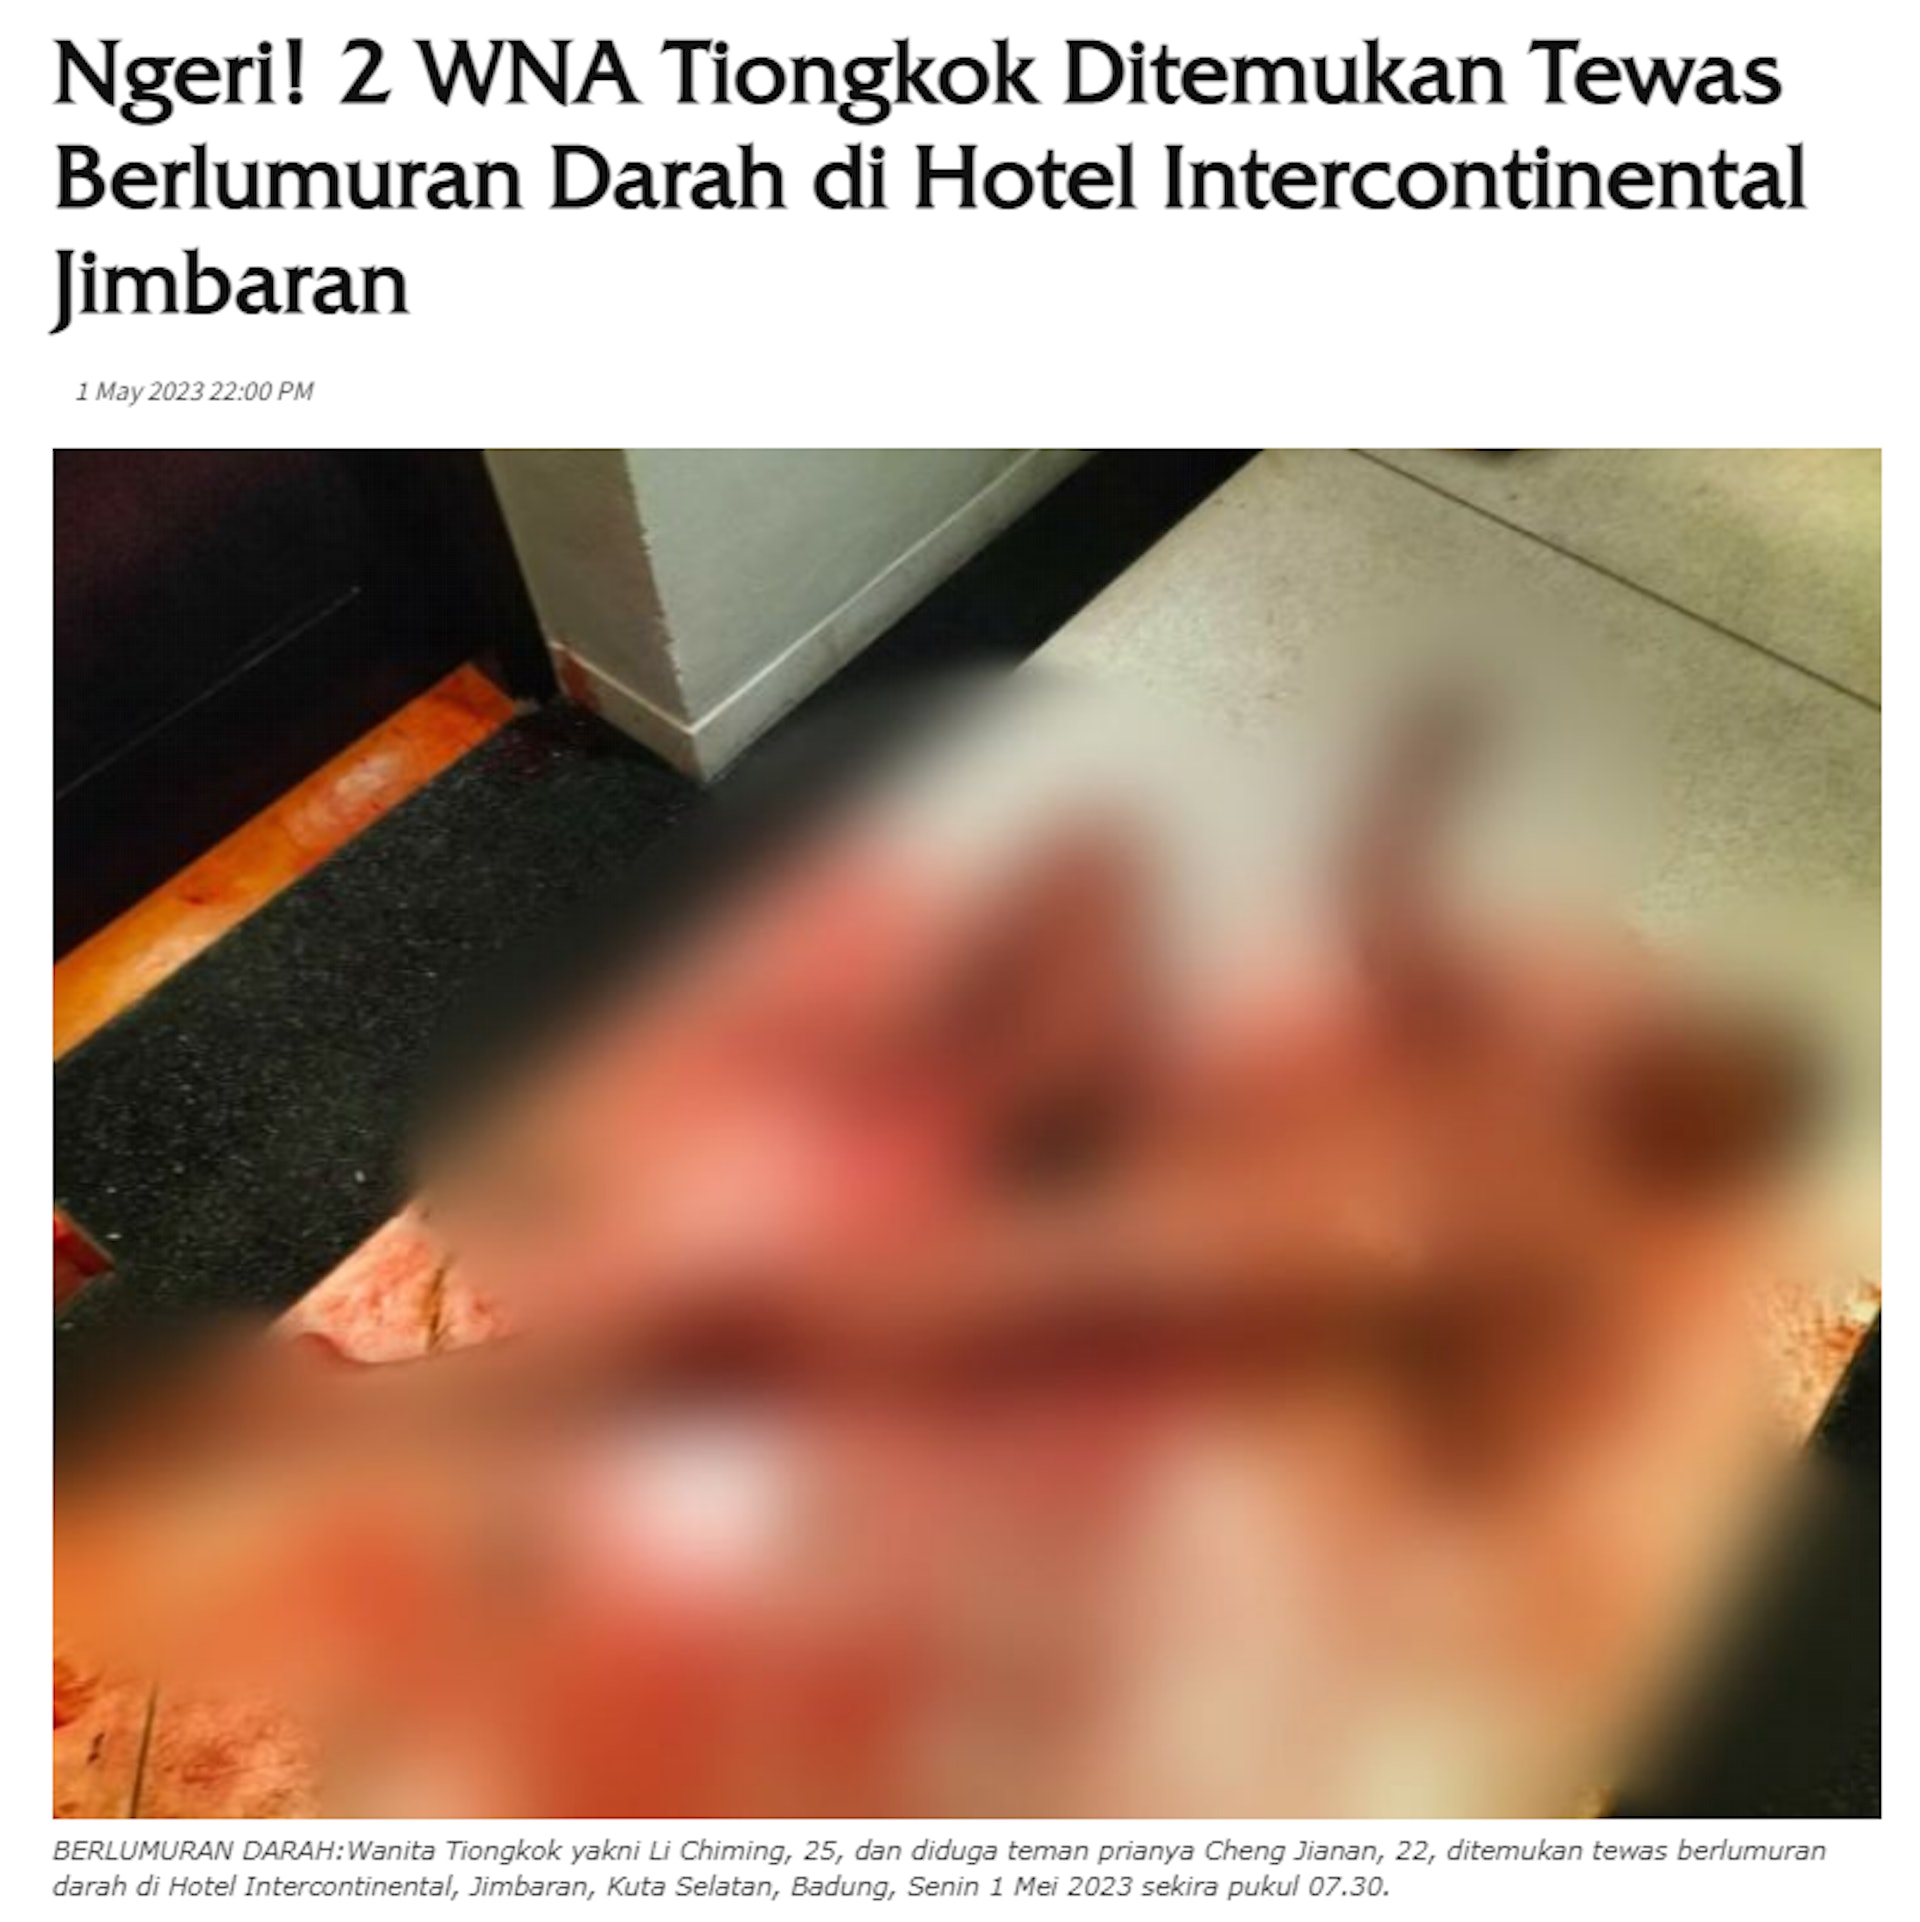 據印尼傳媒報道，案發現場有大量血迹（RadarBali網站截圖）